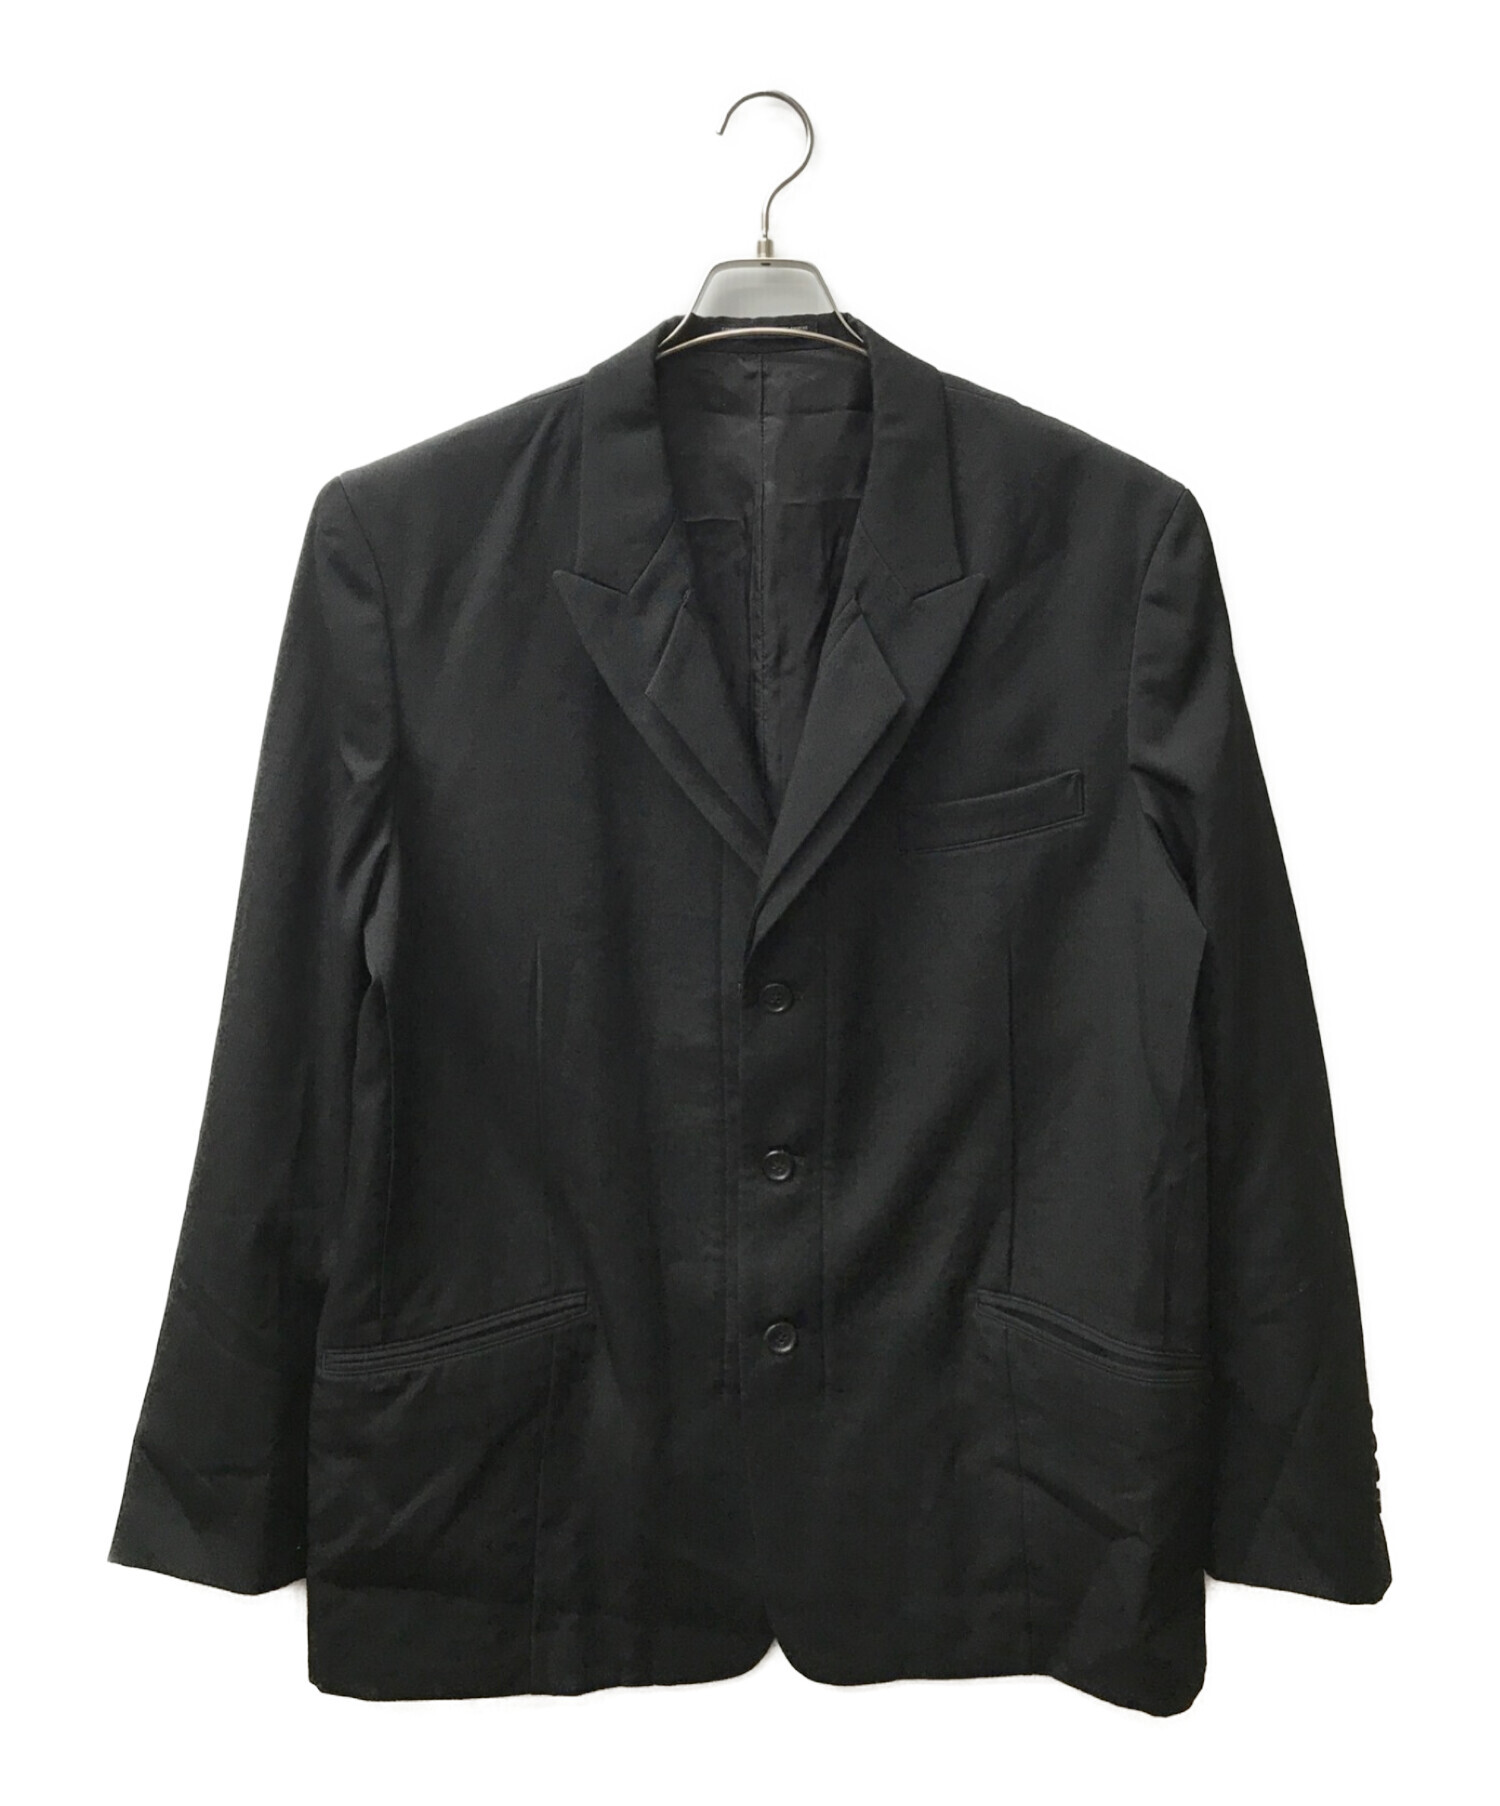 Yohji Yamamoto pour homme (ヨウジヤマモト プールオム) 2重襟テーラードジャケット ブラック サイズ:3